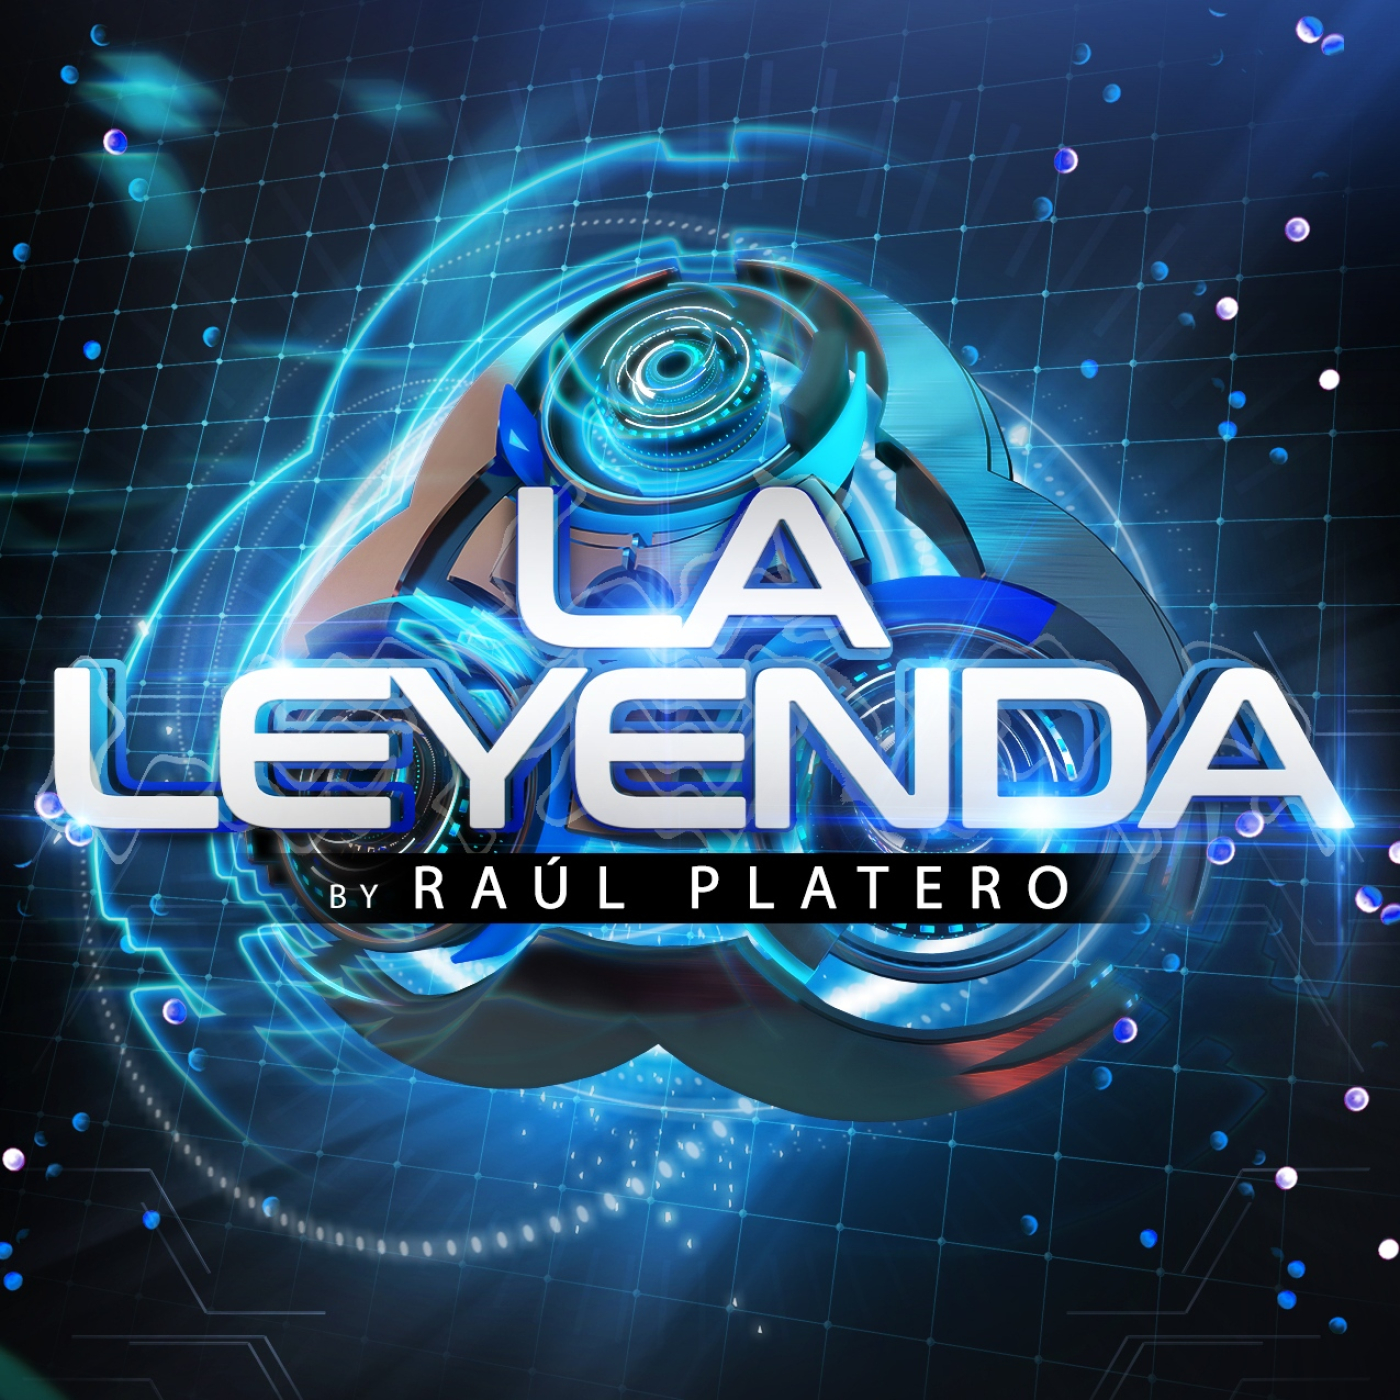 LA LEYENDA by RAUL PLATERO 2020 (Lunes 07 Diciembre)